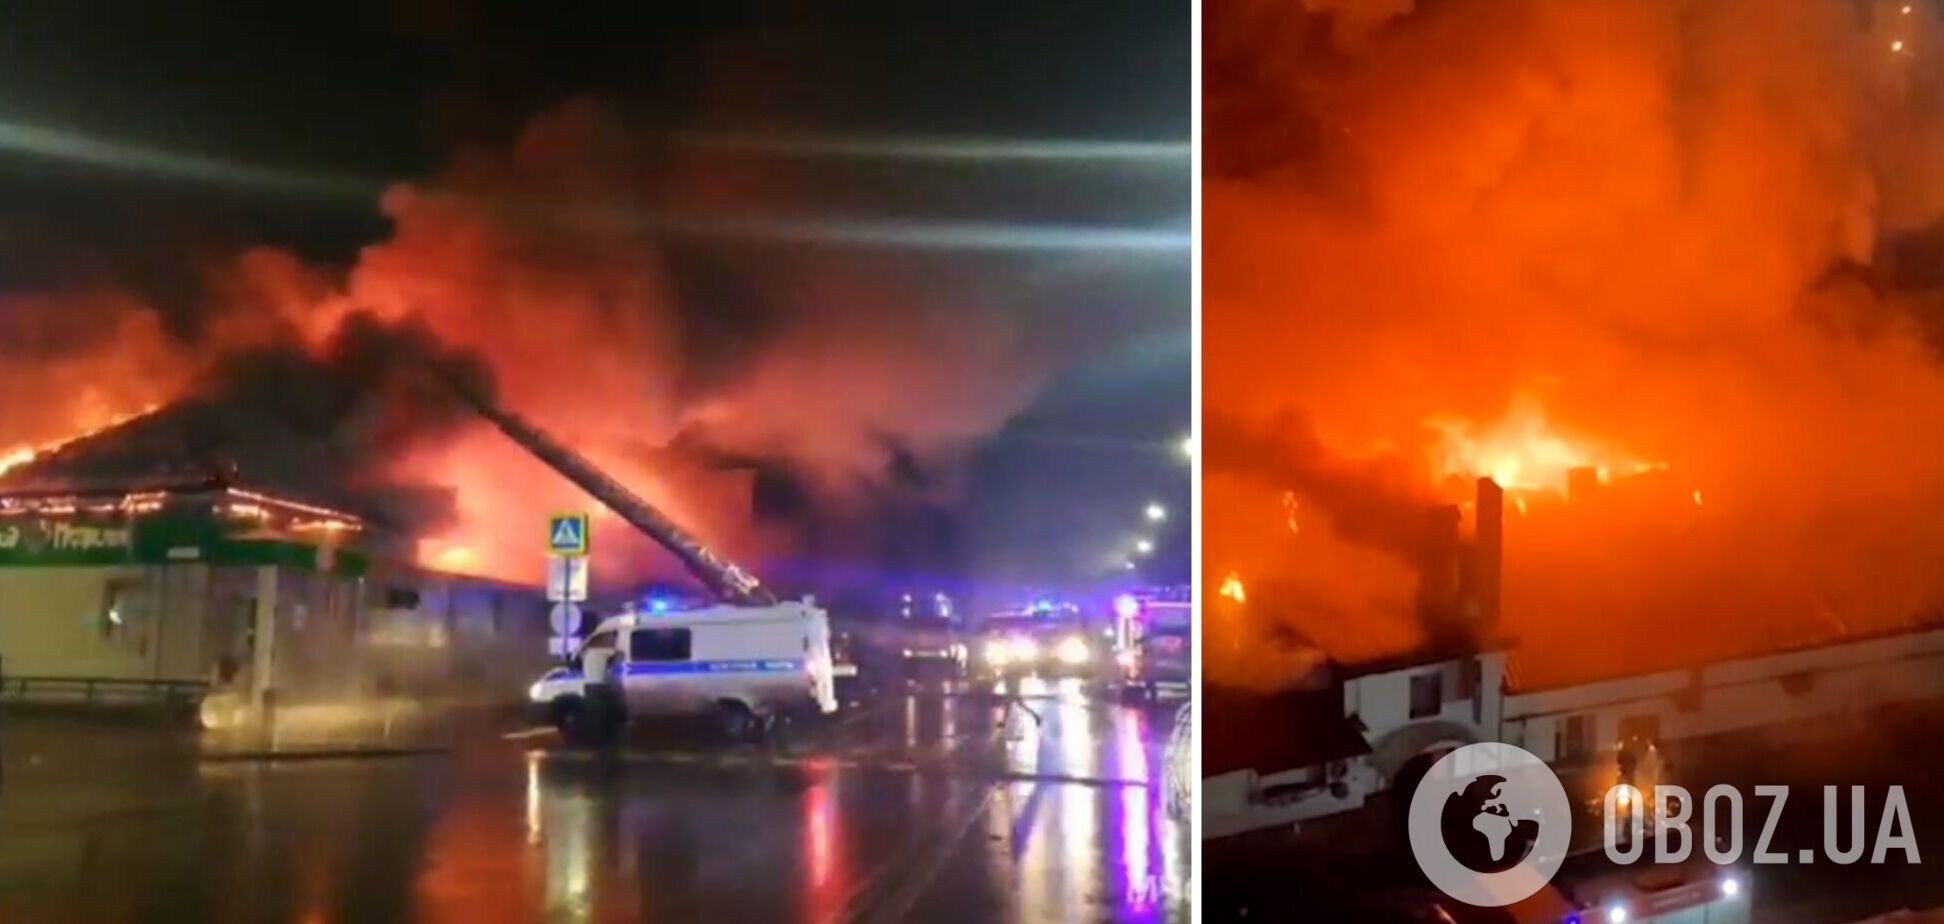 Запустили петарду: в Росії в кафе зі знаковою назвою 'Полігон' через пожежу загинули 15 осіб, 60 постраждали. Відео